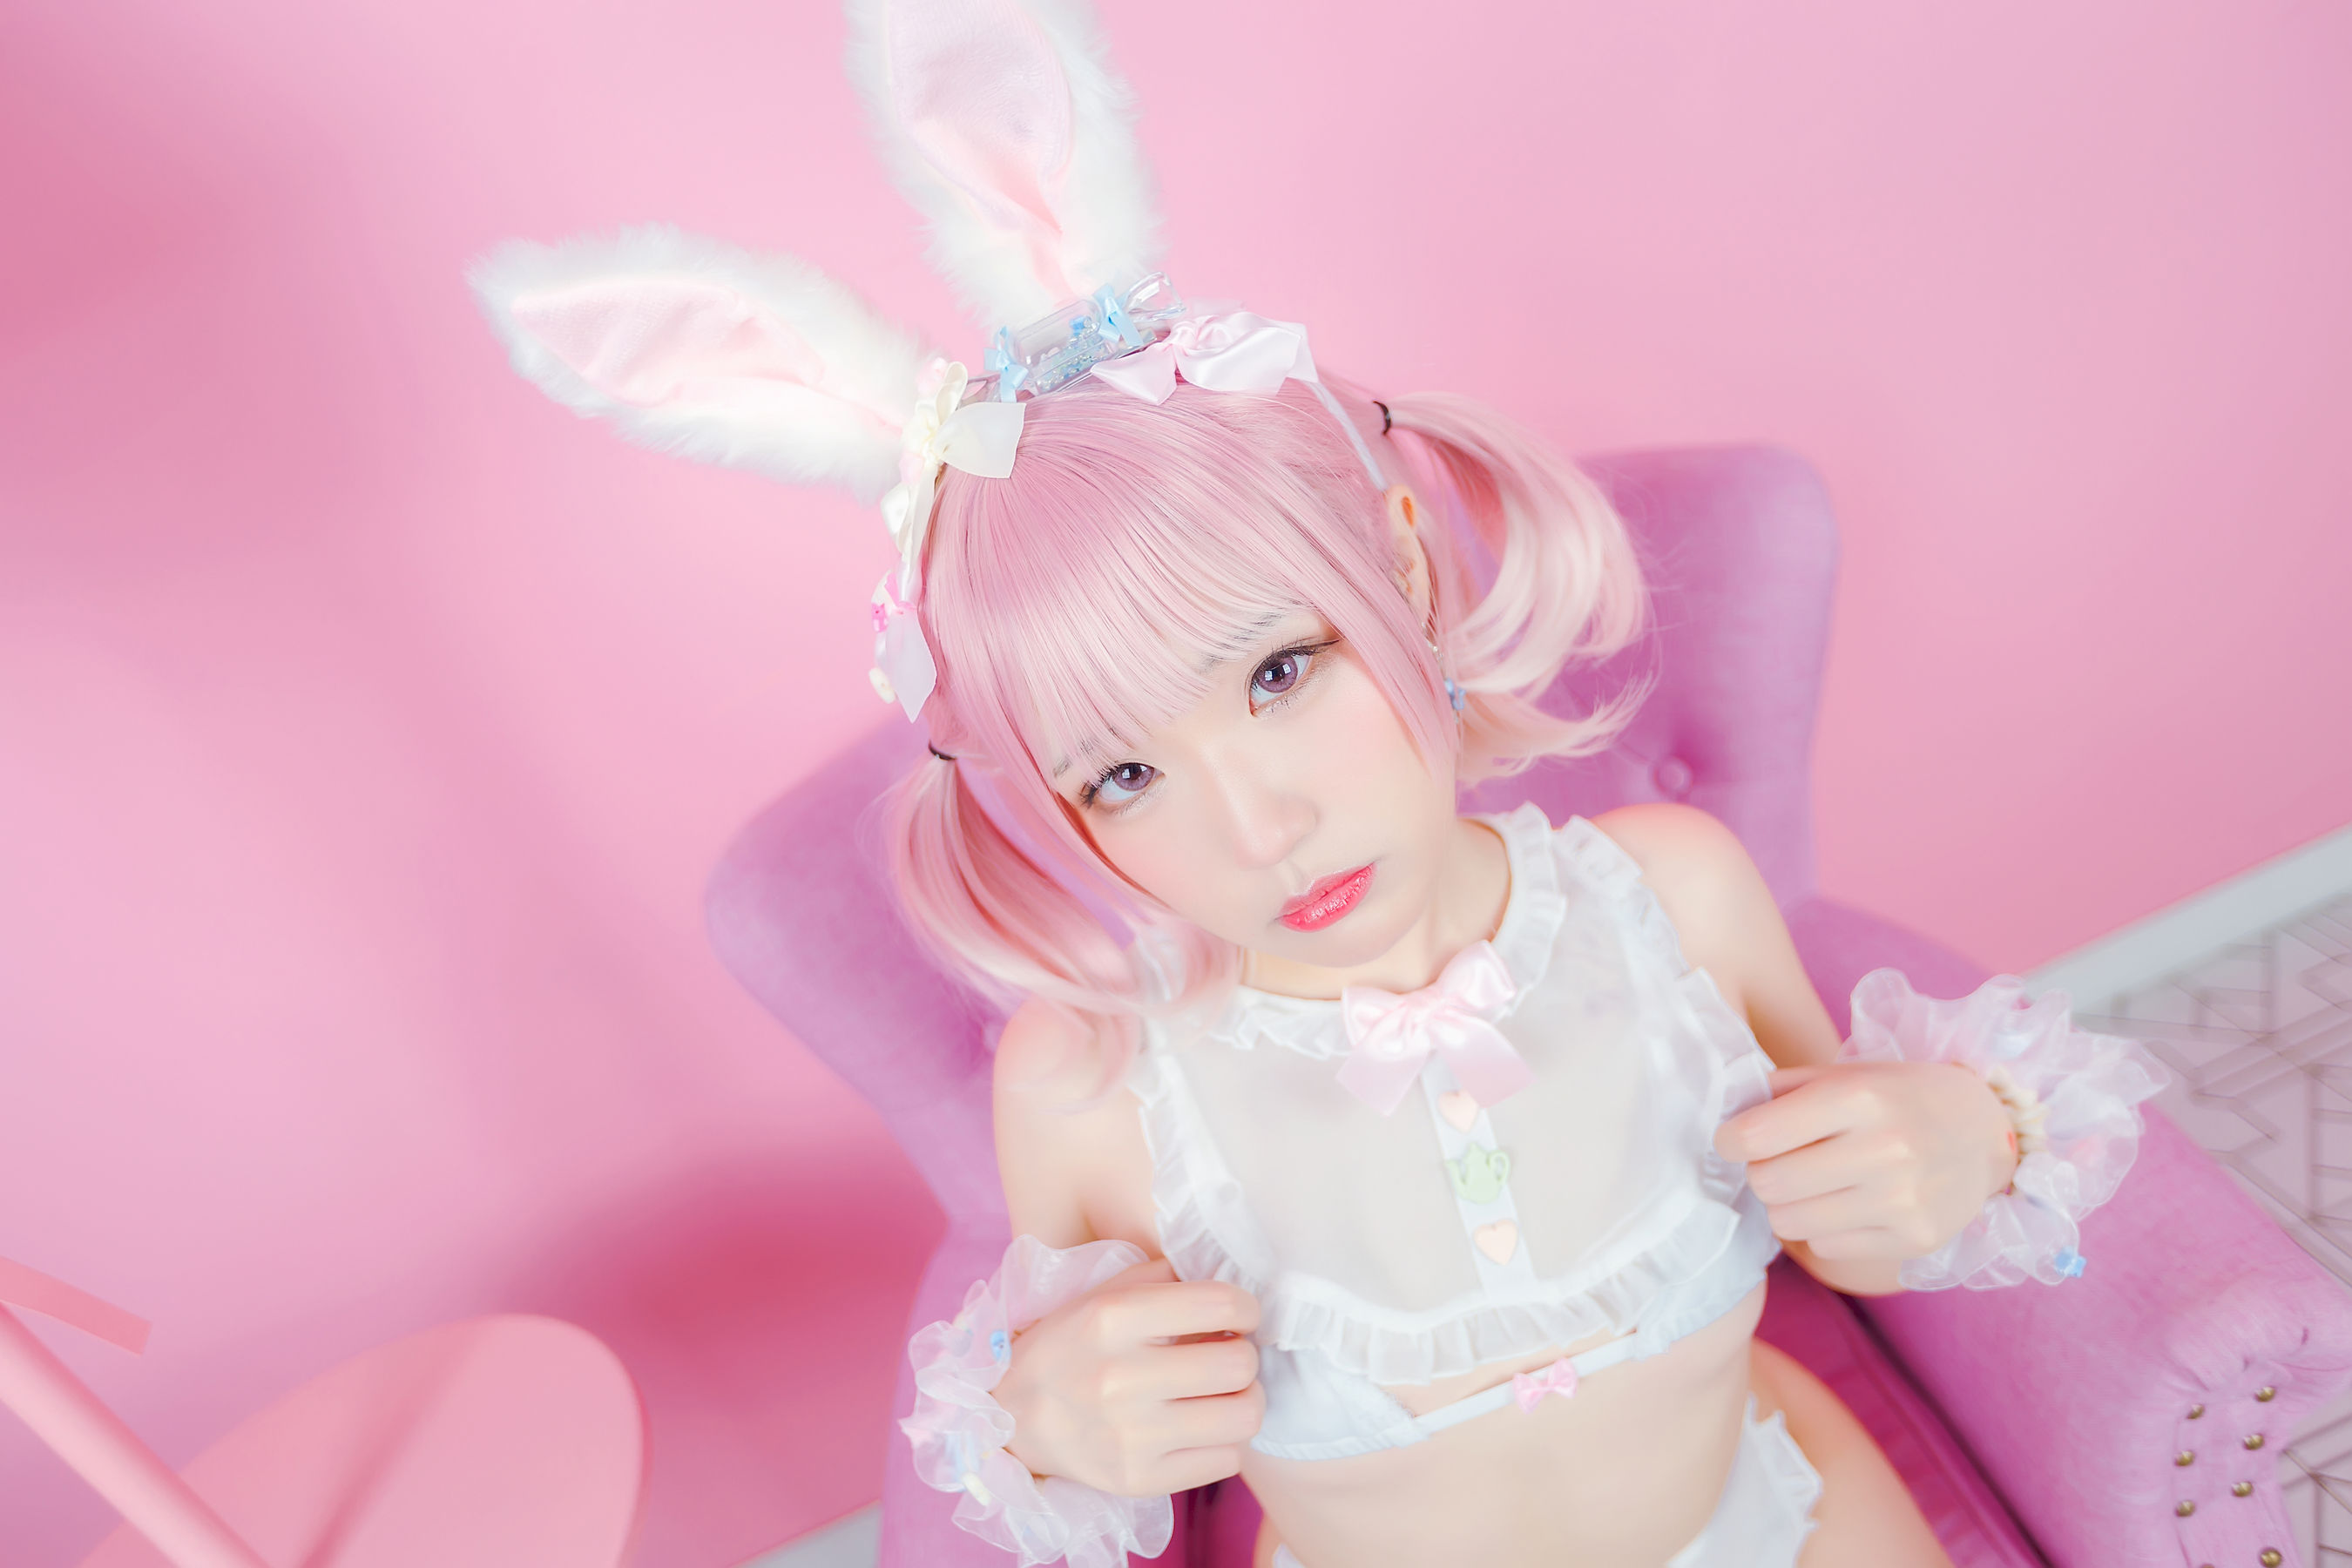 [网红COSER写真] 动漫博主Mime弥美 - 白粉色兔女郎